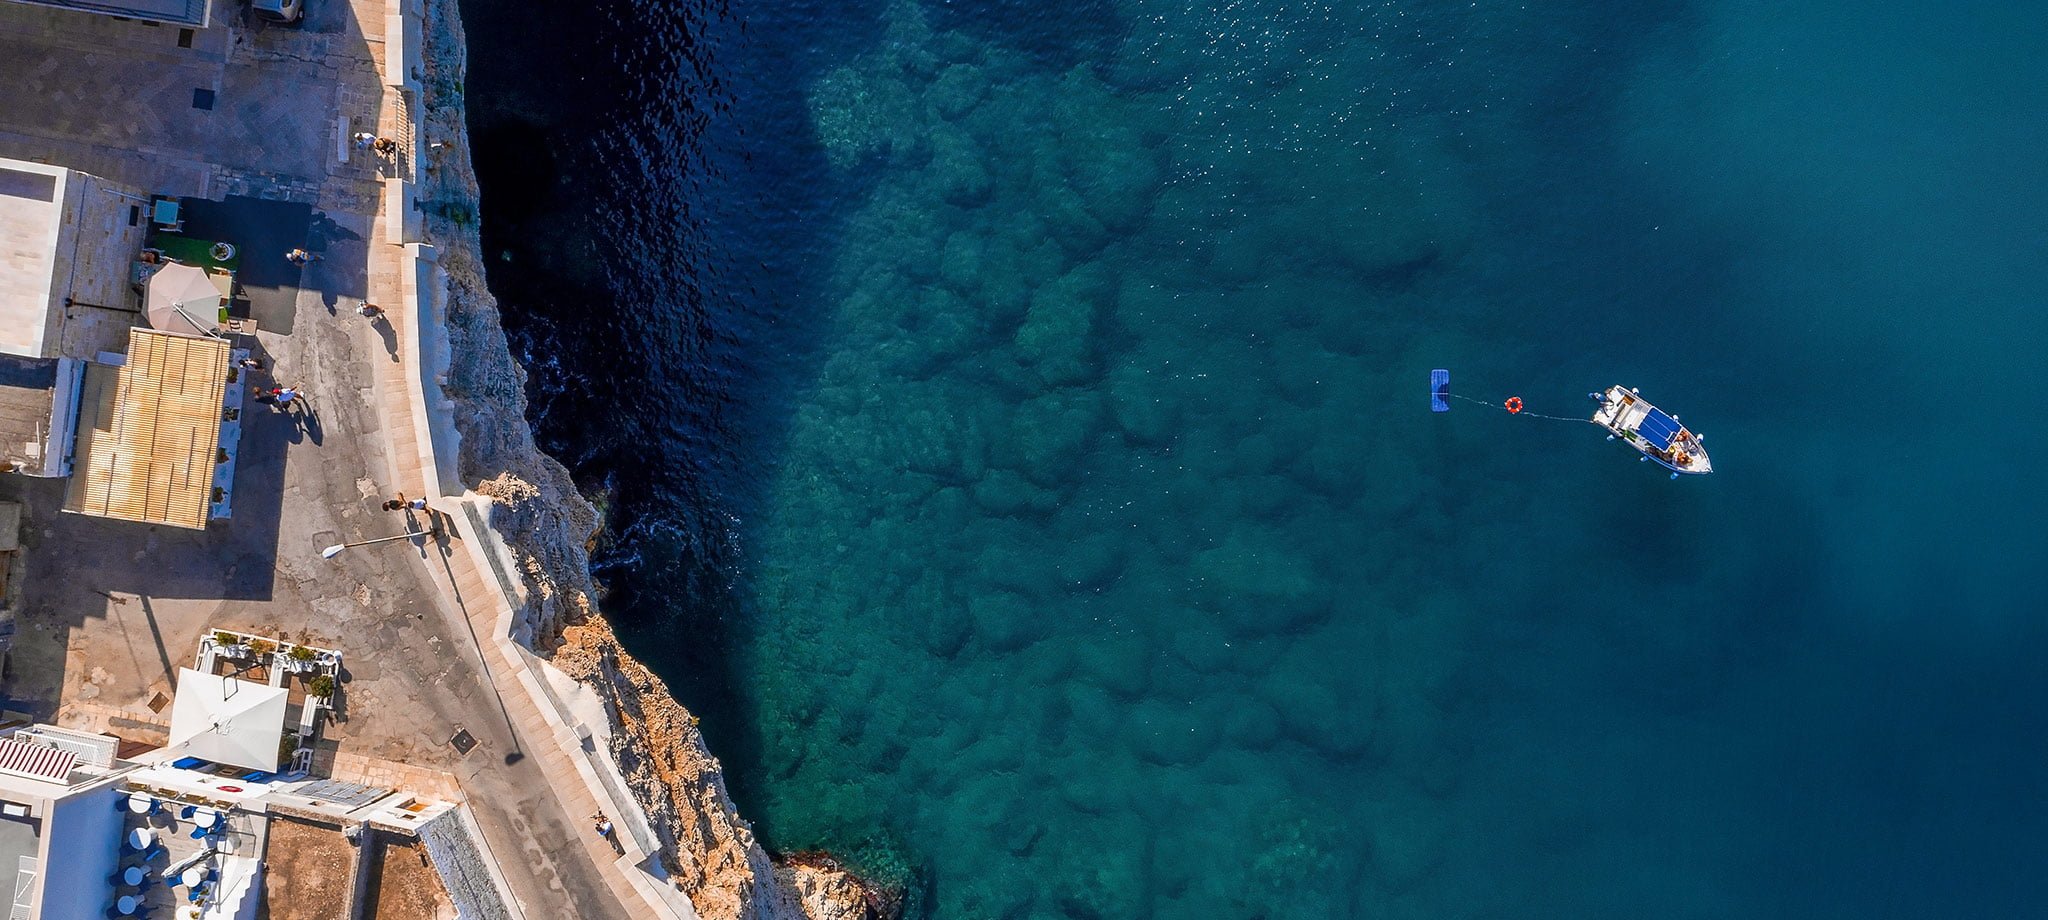 Vista aerea drone del tour grotte di Polignano a mare